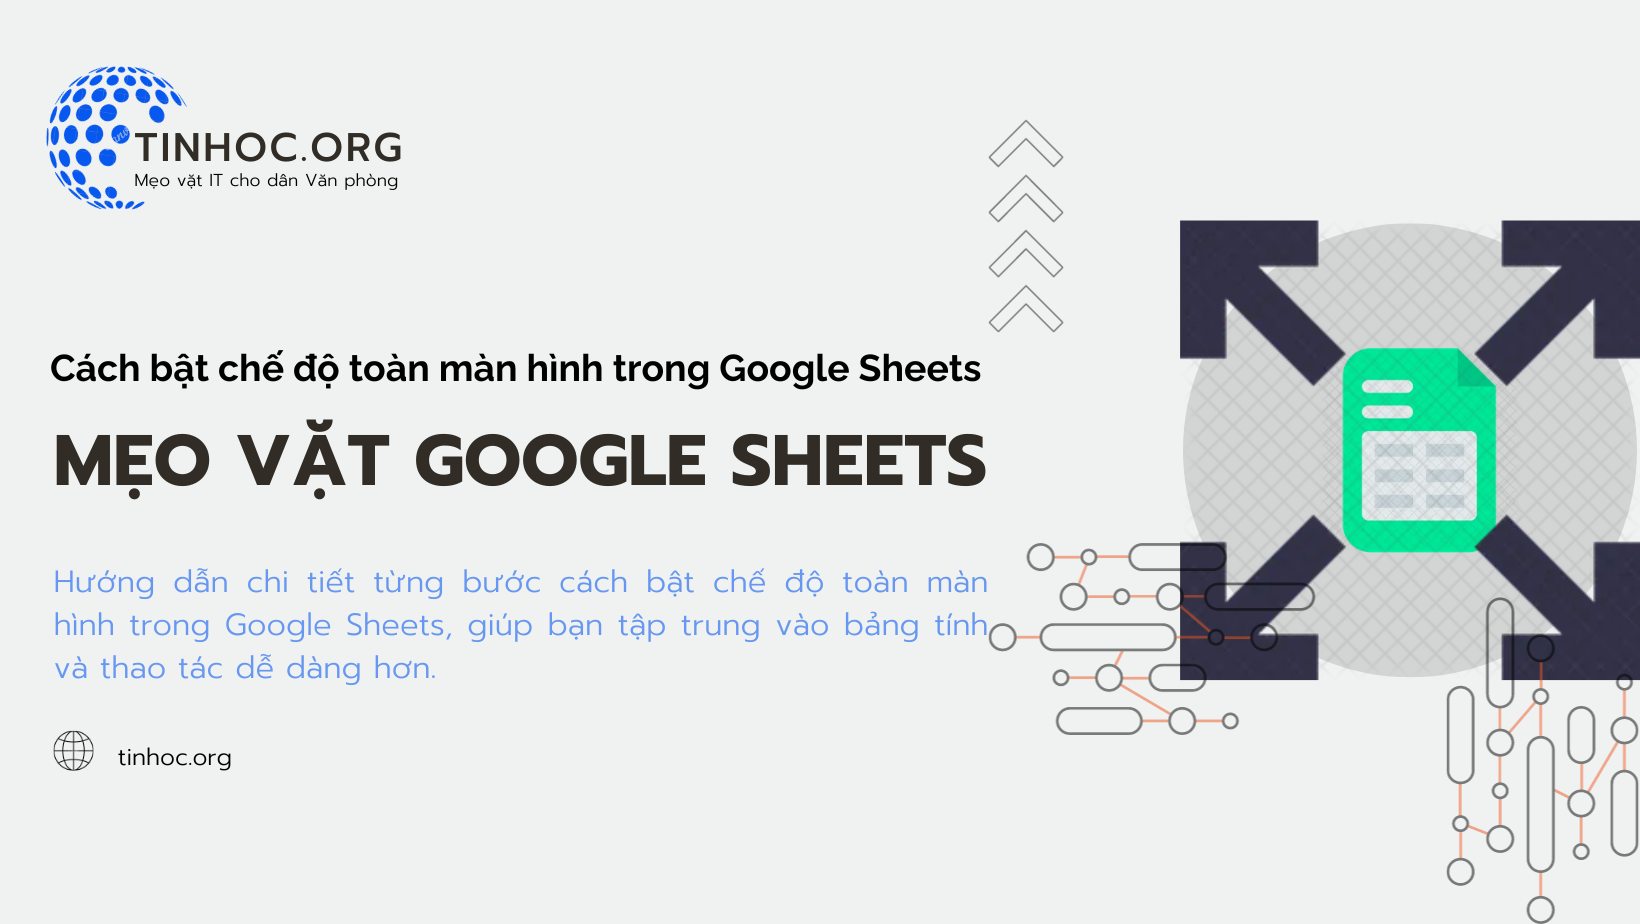 Hướng dẫn chi tiết từng bước cách bật chế độ toàn màn hình trong Google Sheets, giúp bạn tập trung vào bảng tính và thao tác dễ dàng hơn.